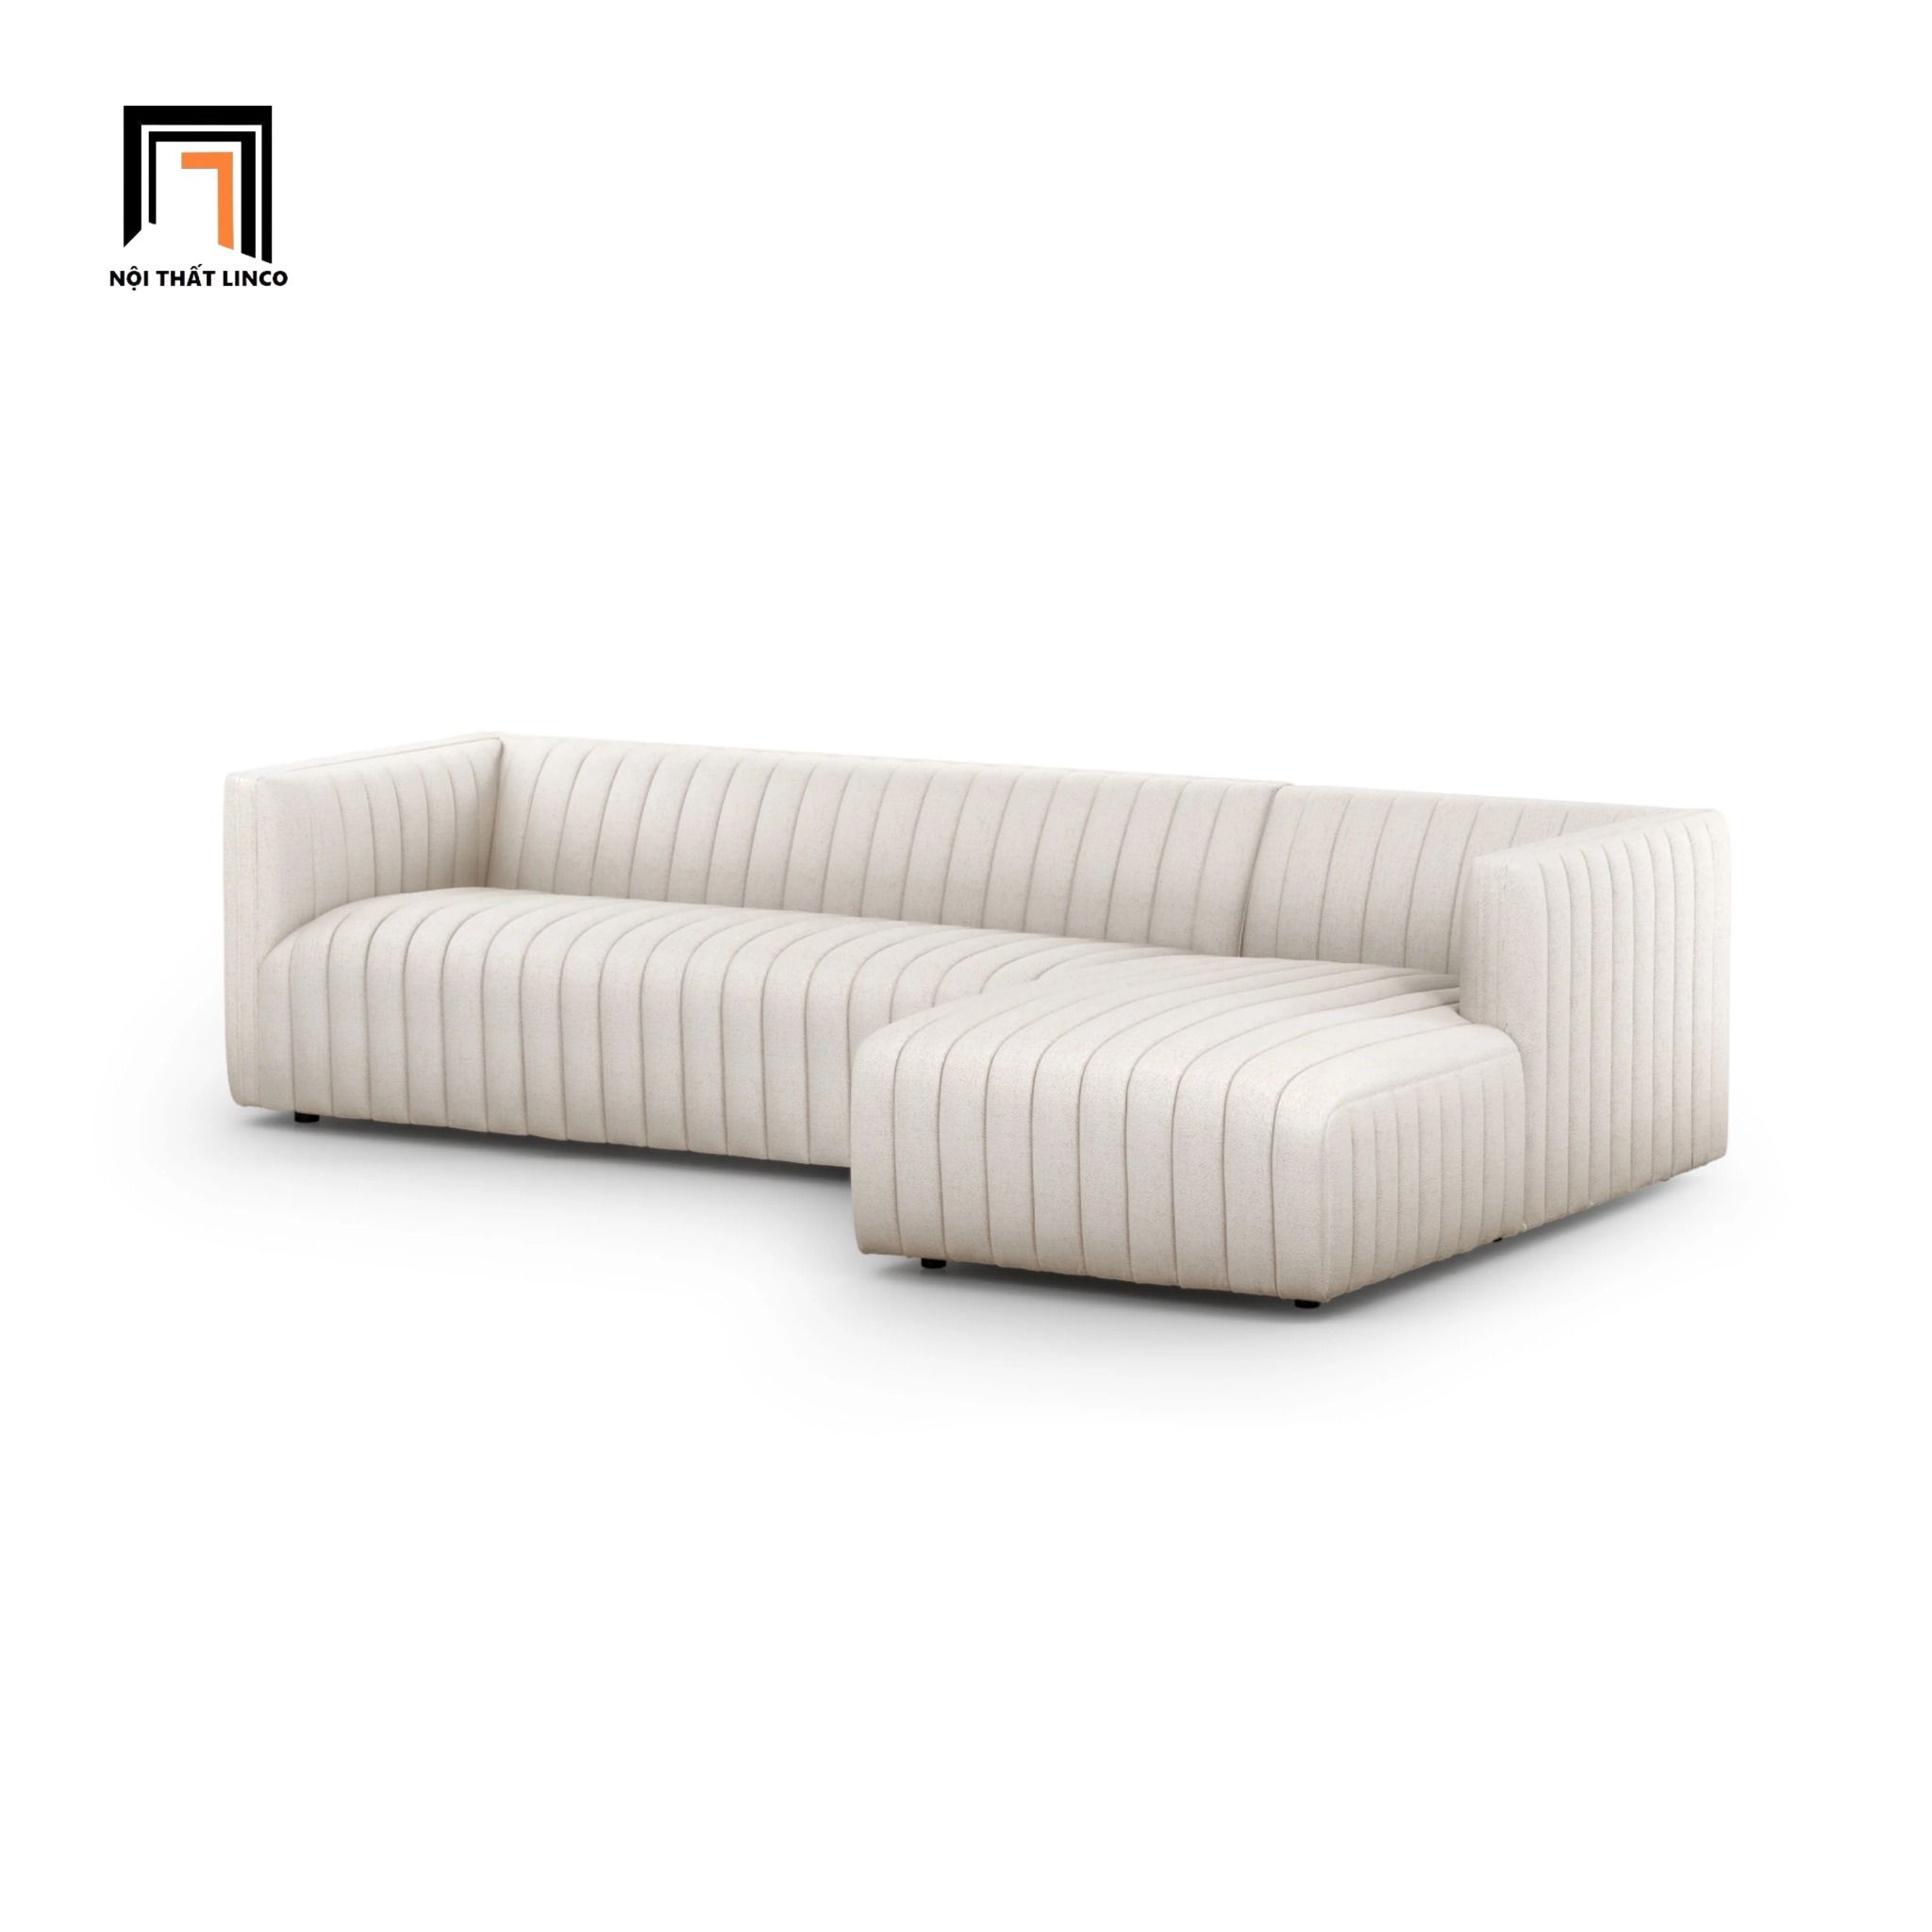  Bộ ghế sofa góc GT80 Augustine 2m4 x 1m6 màu trắng kem 